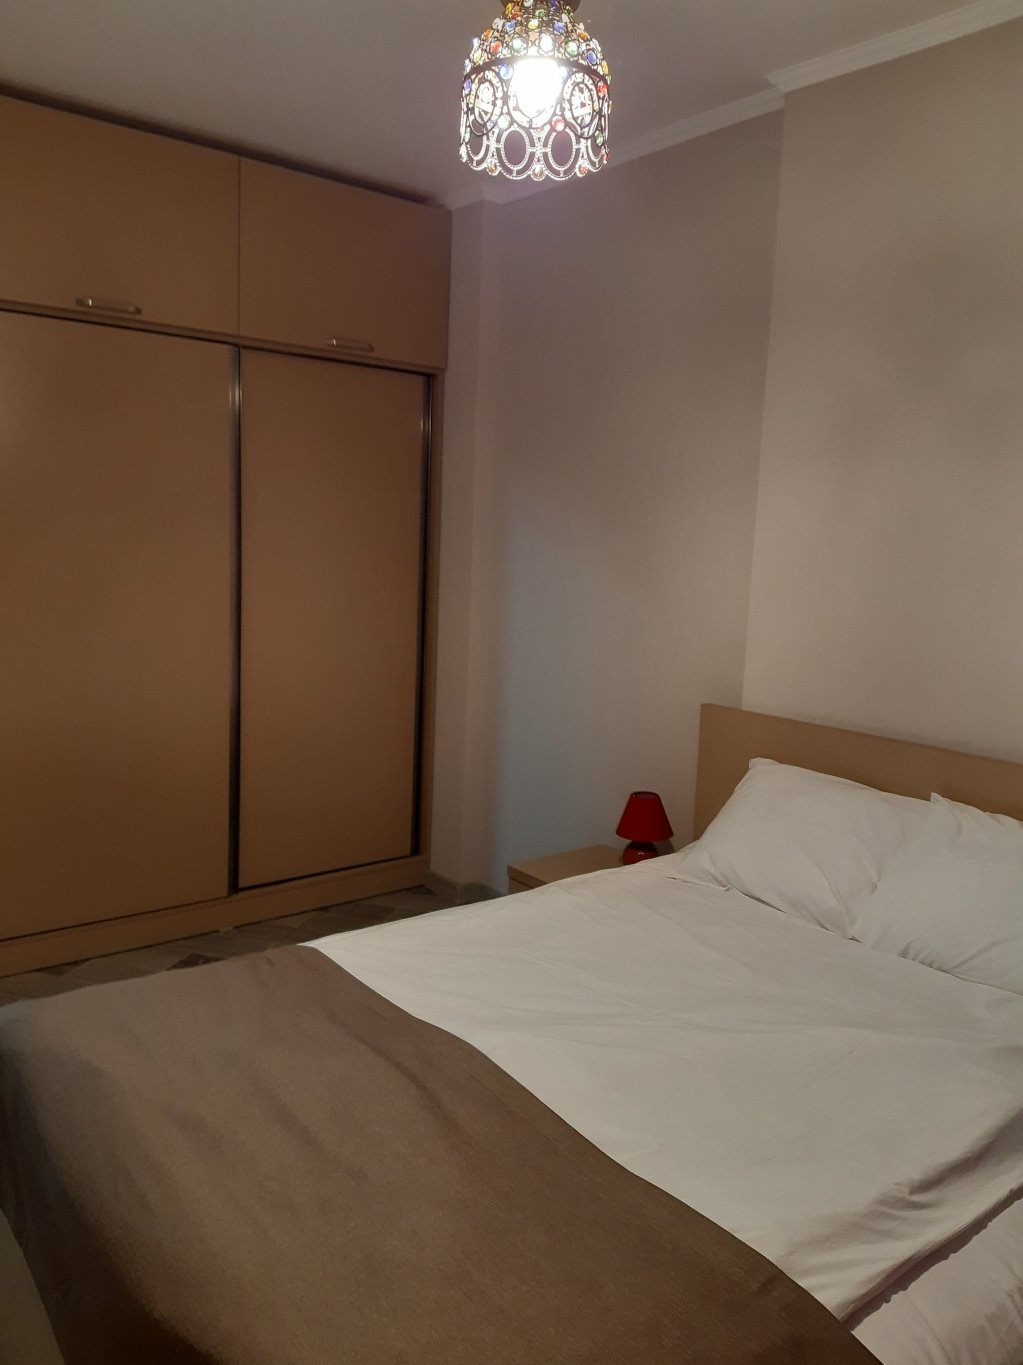 1-bedroom apartment "Spark" id-995 - Batumi Vacation Rentals